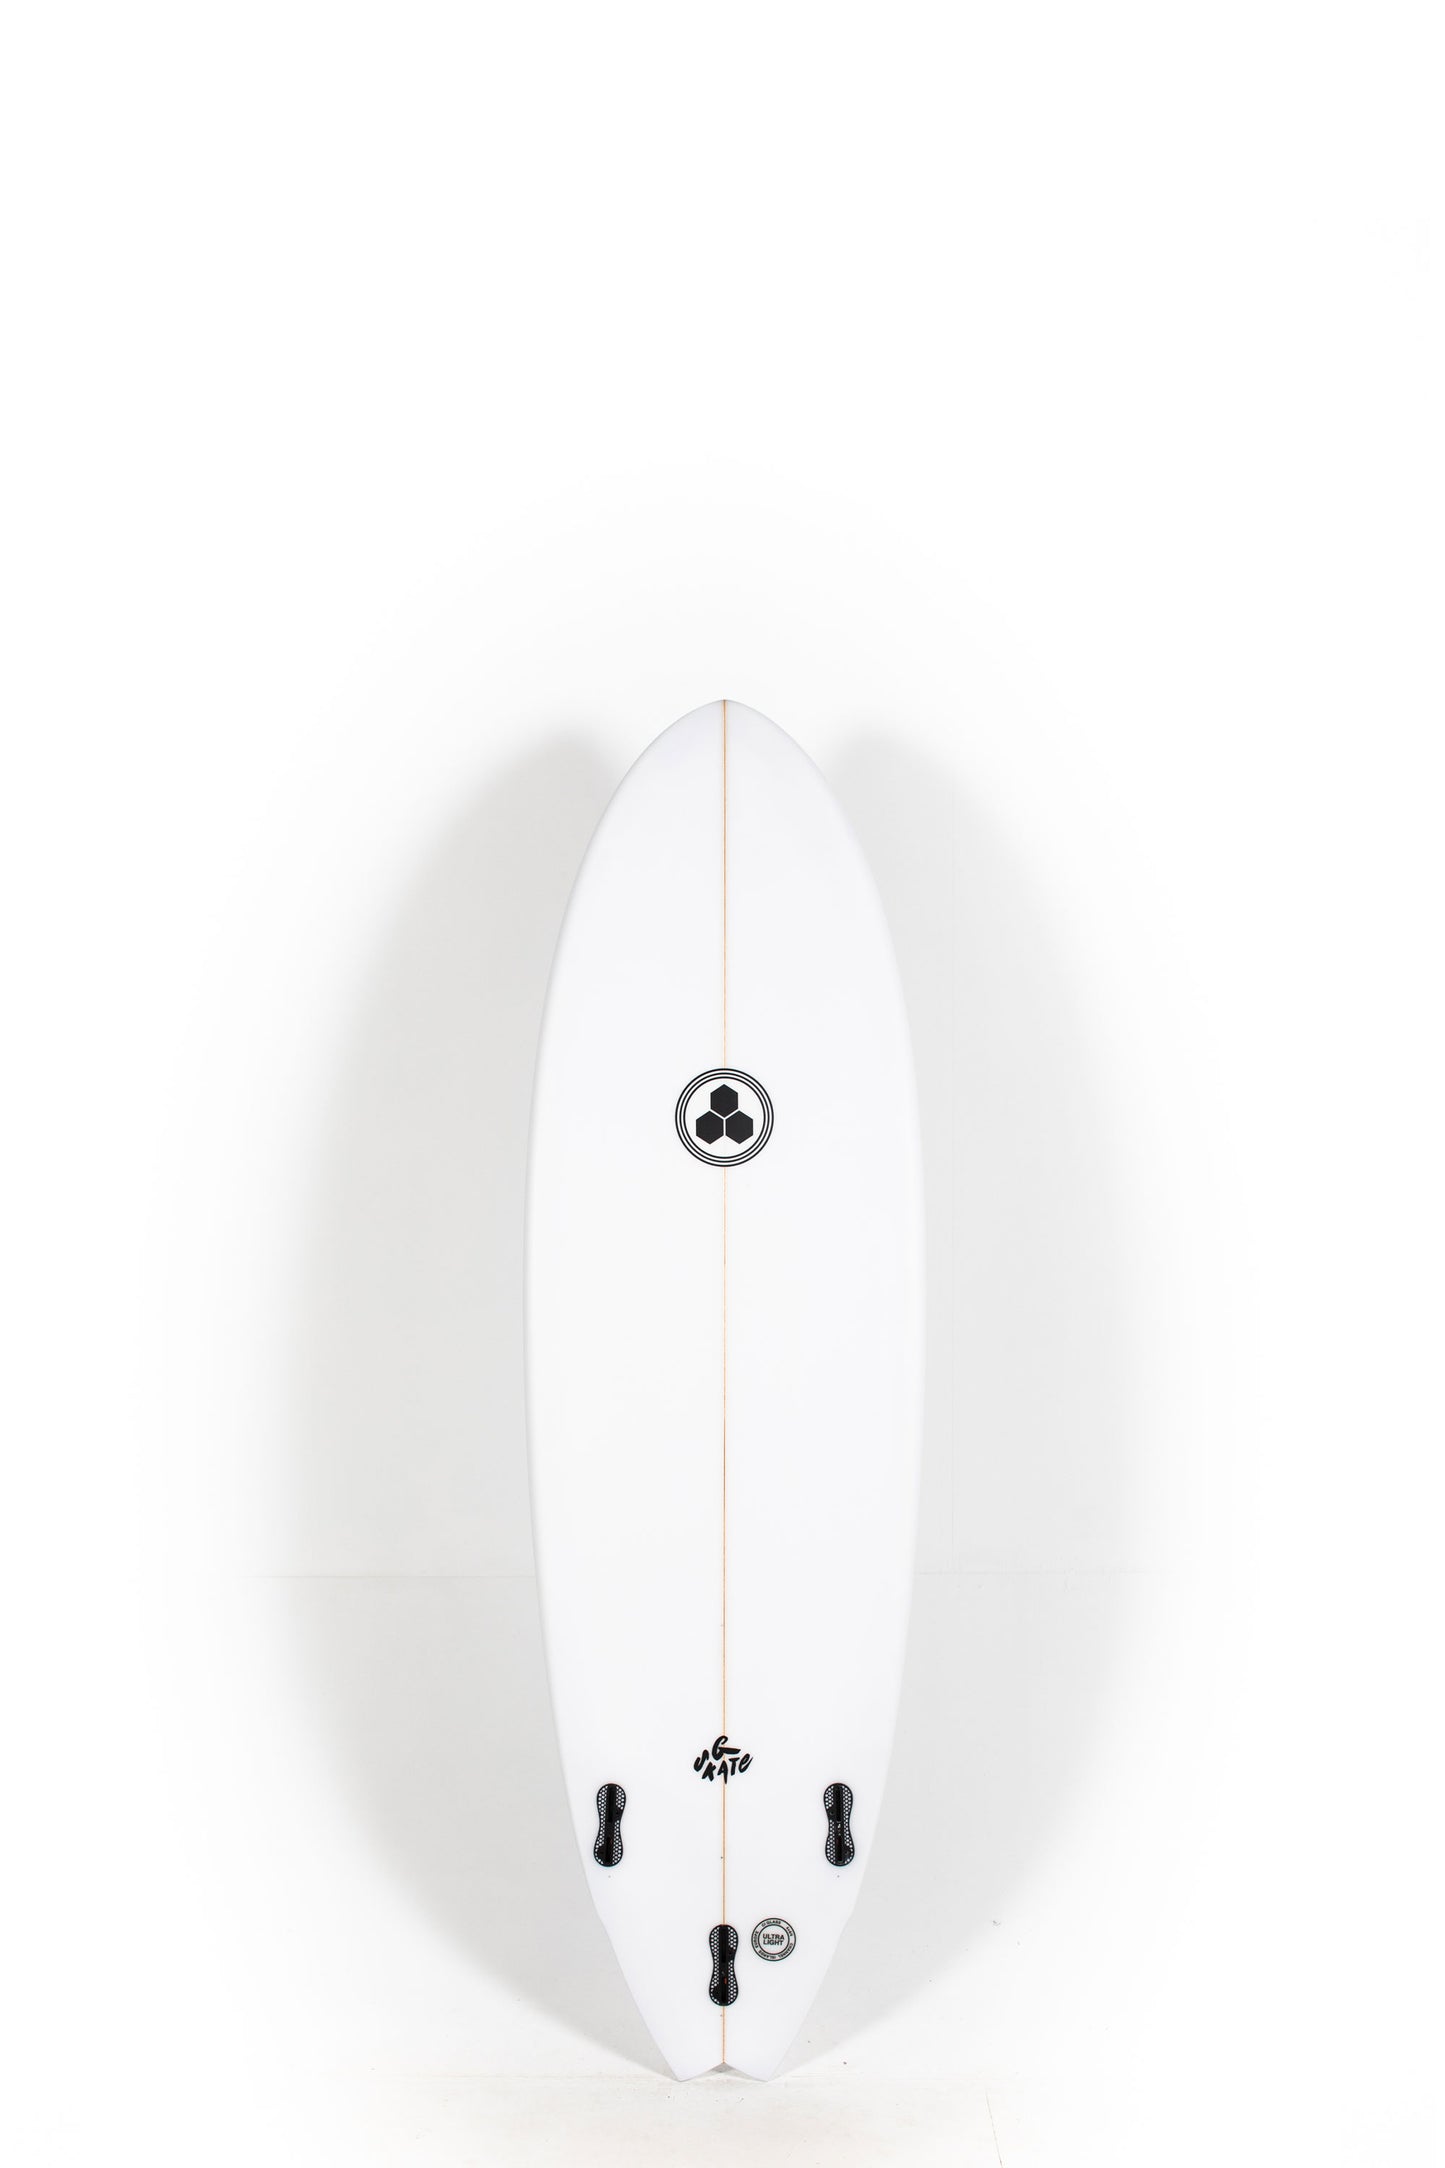 Pukas Surf Shop - Channel Islands - G-Skate by Al Merrick - 6'0" x 20 1/2 x 2 3/4 - 38L - CI26683